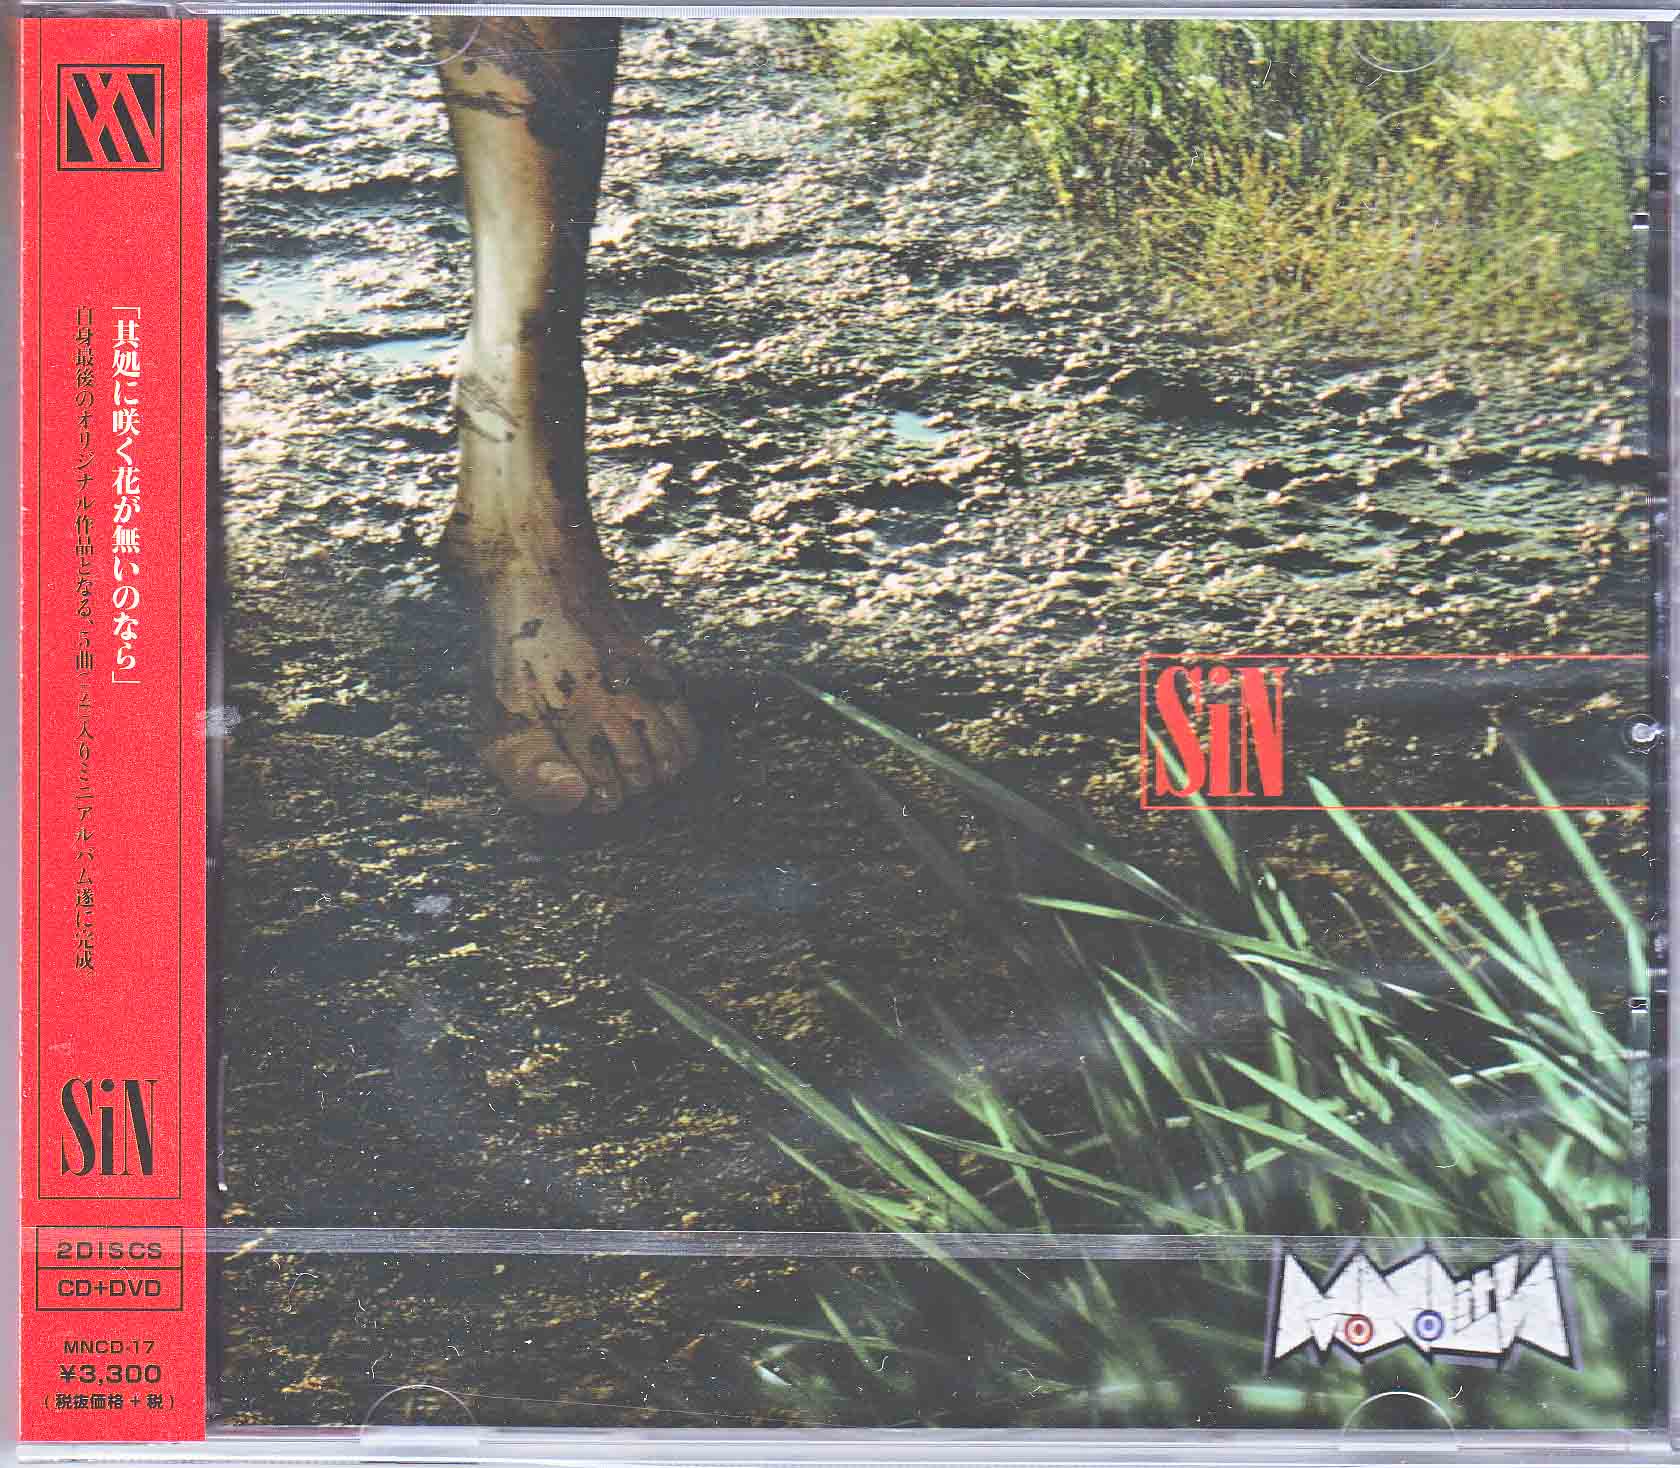 MoNoLith ( モノリス )  の CD SiN